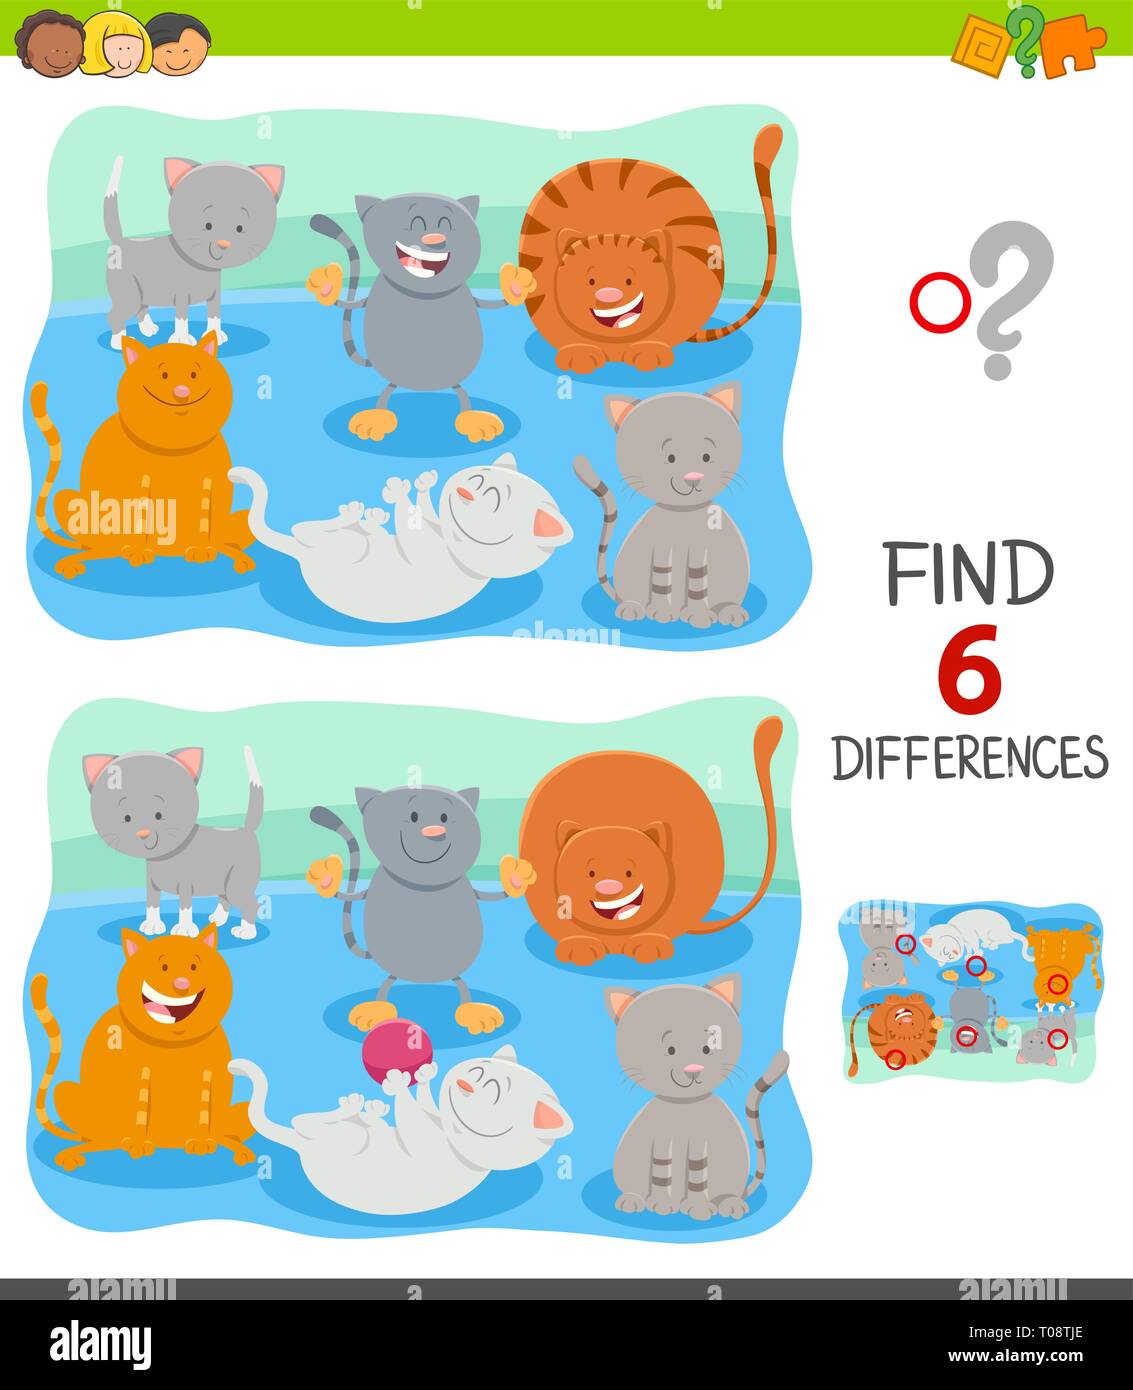 Illustrazione del fumetto di trovare 6 differenze tra le immagini del gioco educativo per bambini con gatti felici Illustrazione Vettoriale